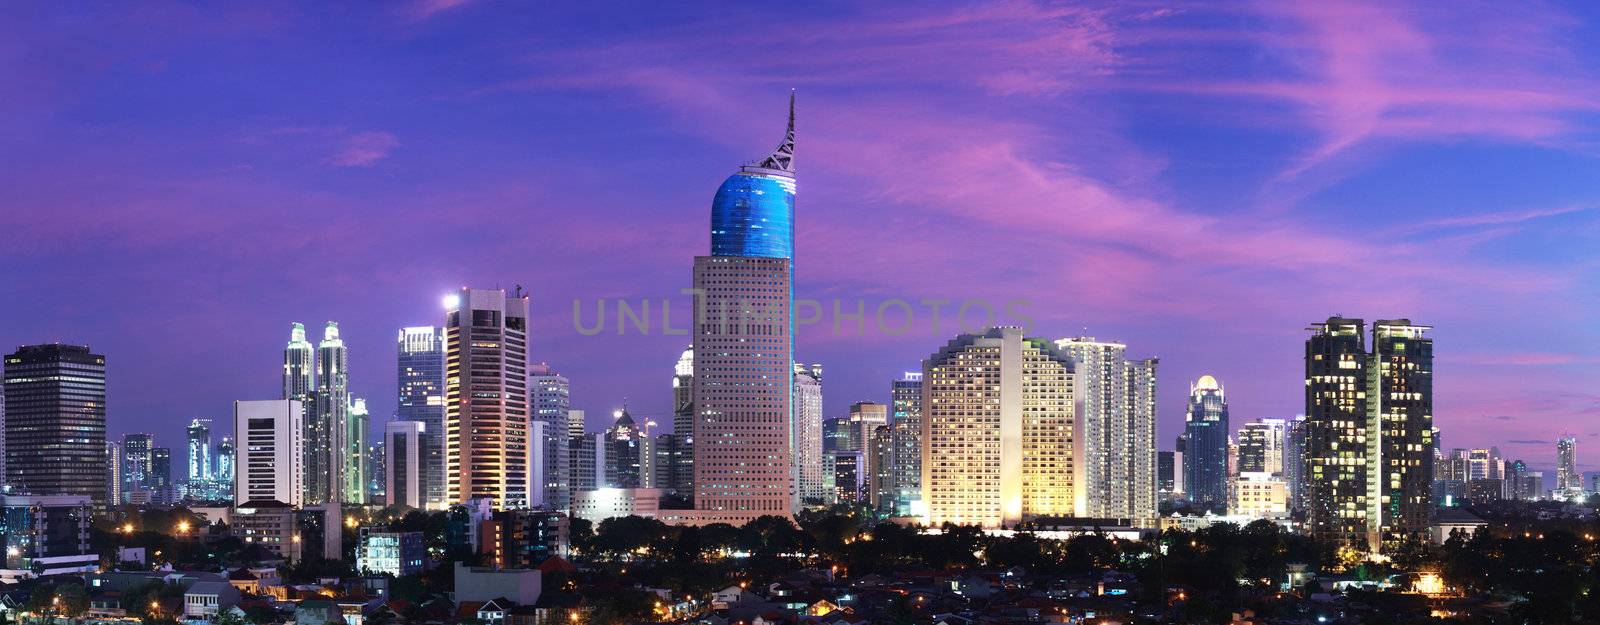 Jakarta City Sunset by photosoup